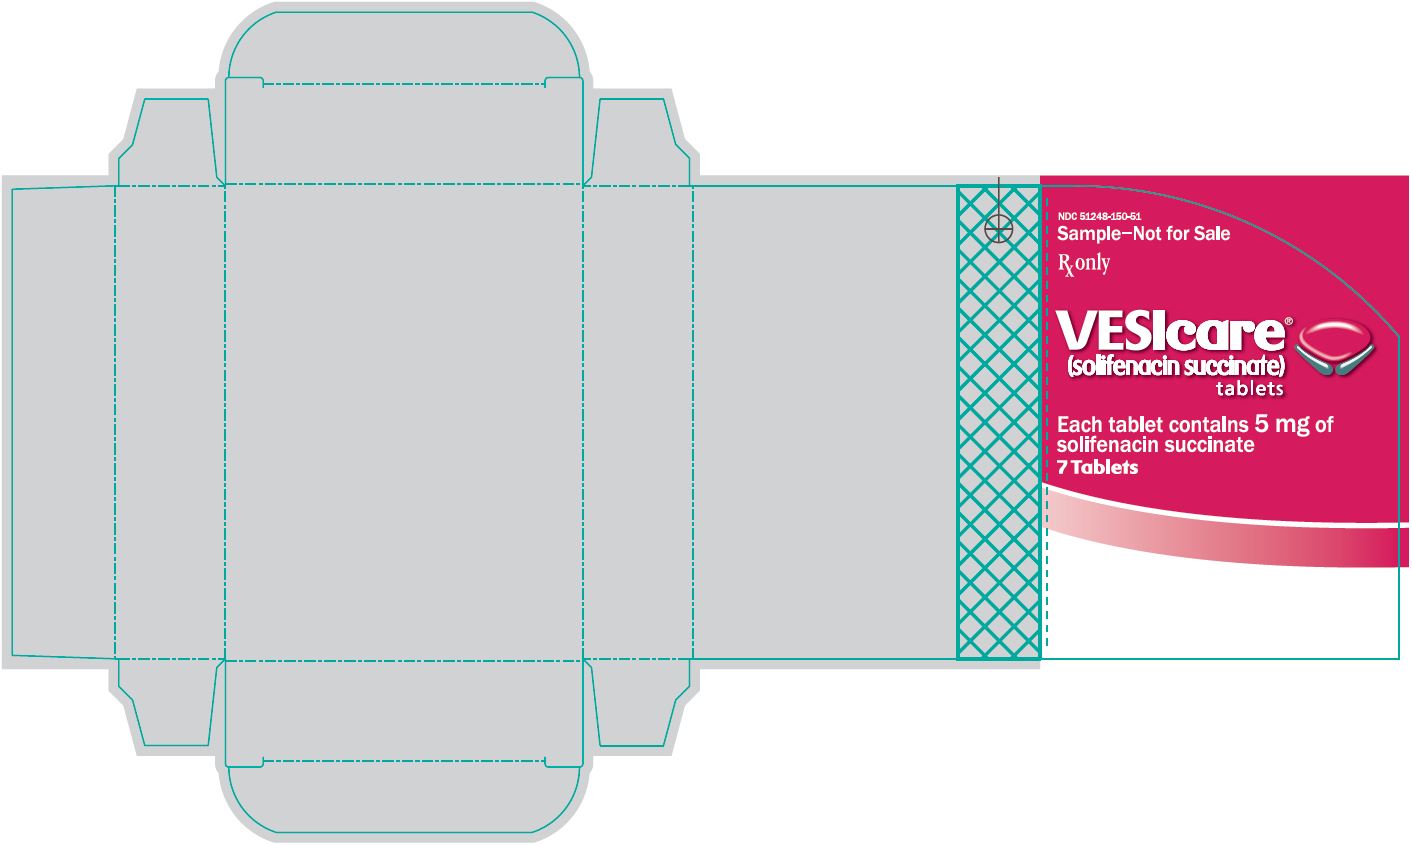 VESIcare (solifenacin succinate) tablets 5 mg back label